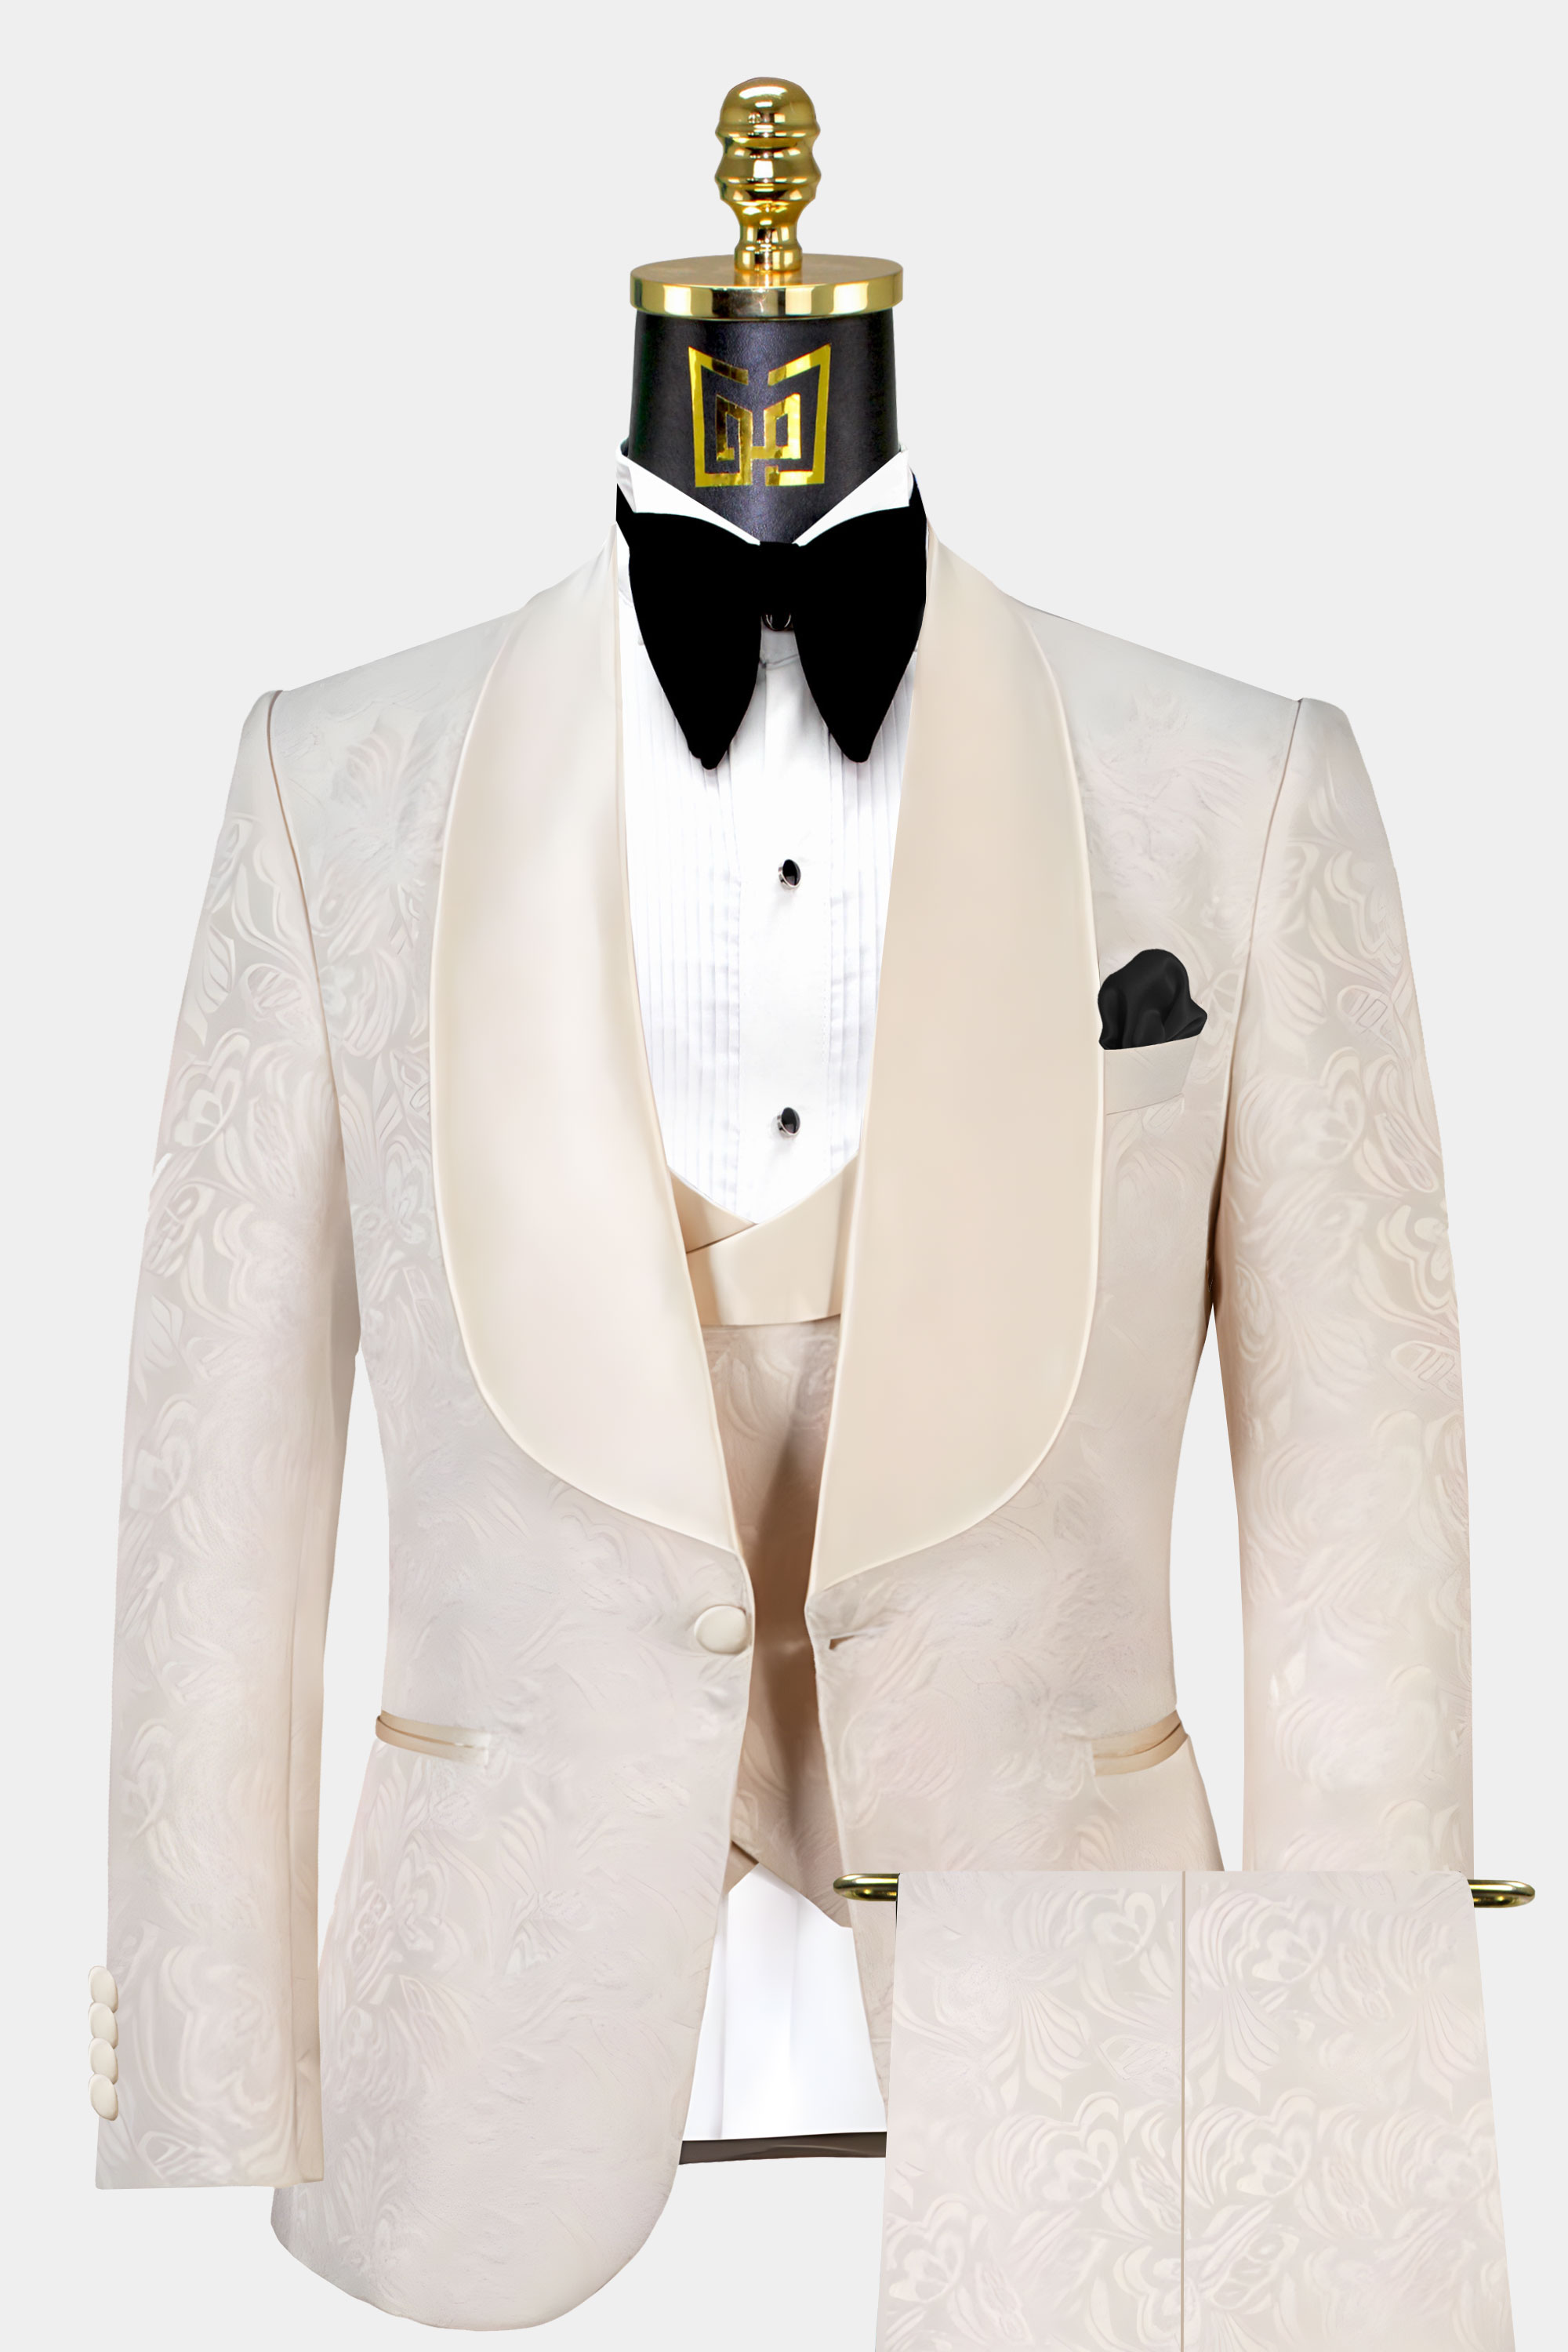 3 Piece Champagne Men Jacquard Paisley Floral Suit Prom Tuxedos Wedding Suit